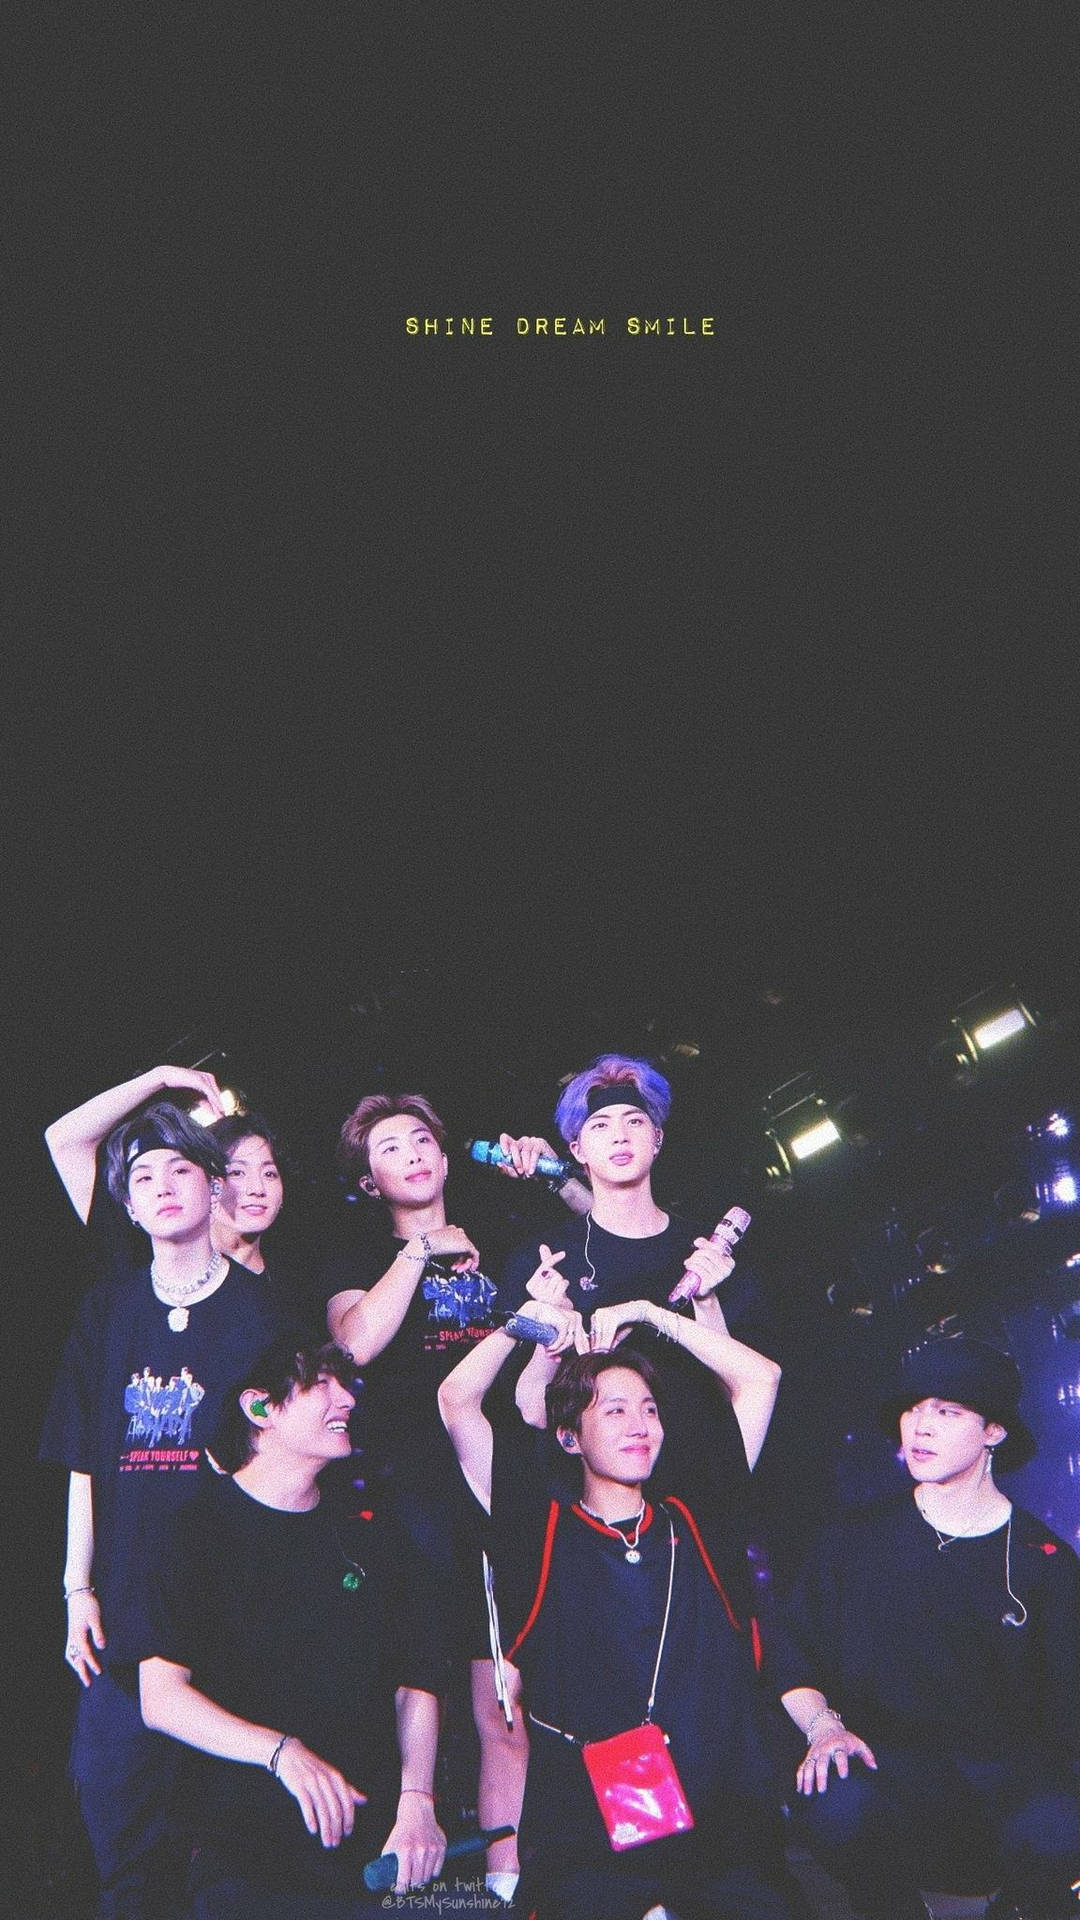 BTS Concert: Shine, Dream, Smile Wallpaper